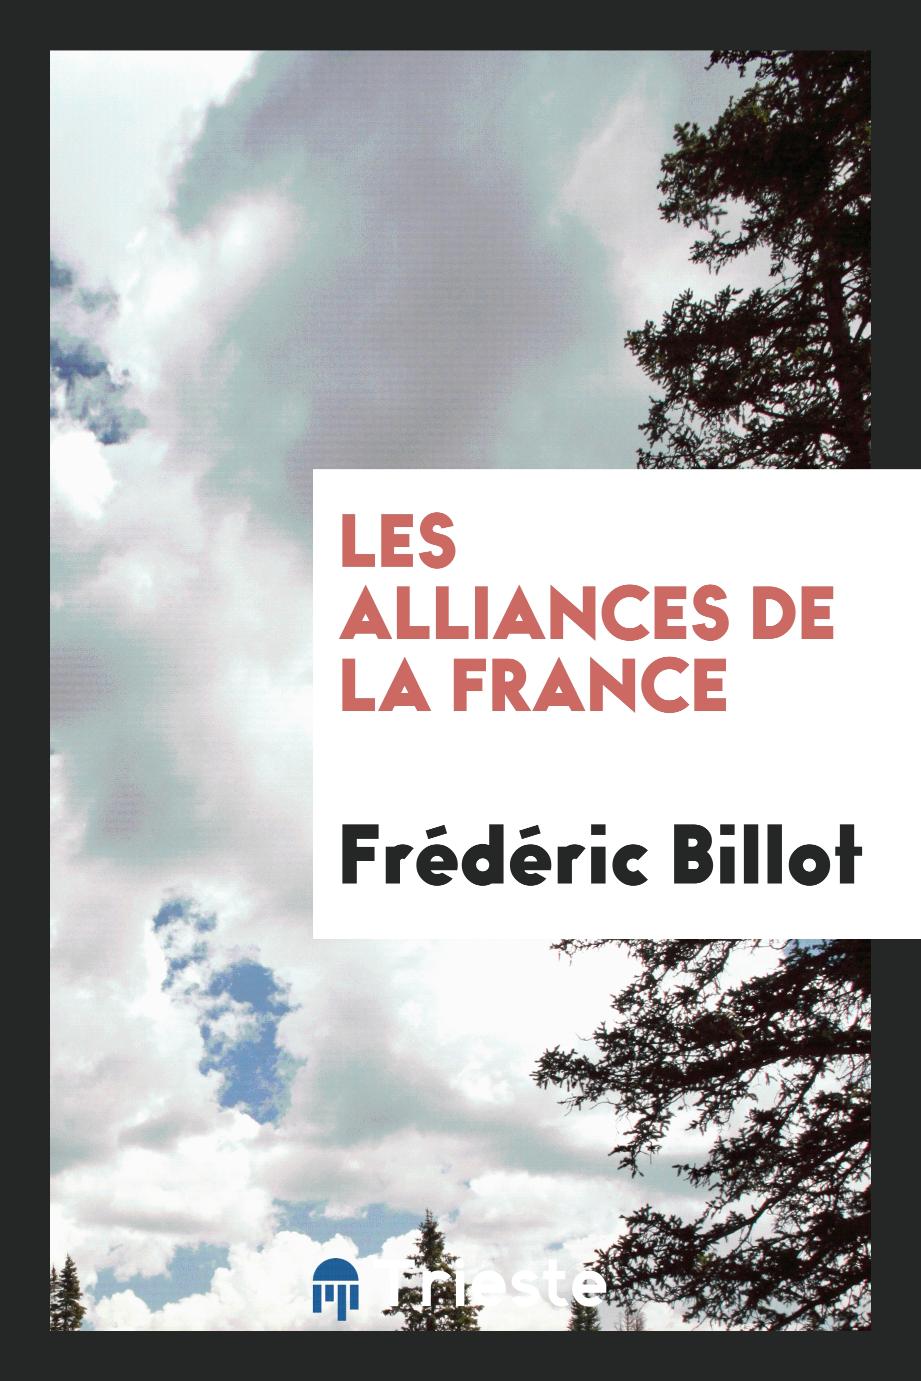 Les alliances de la France